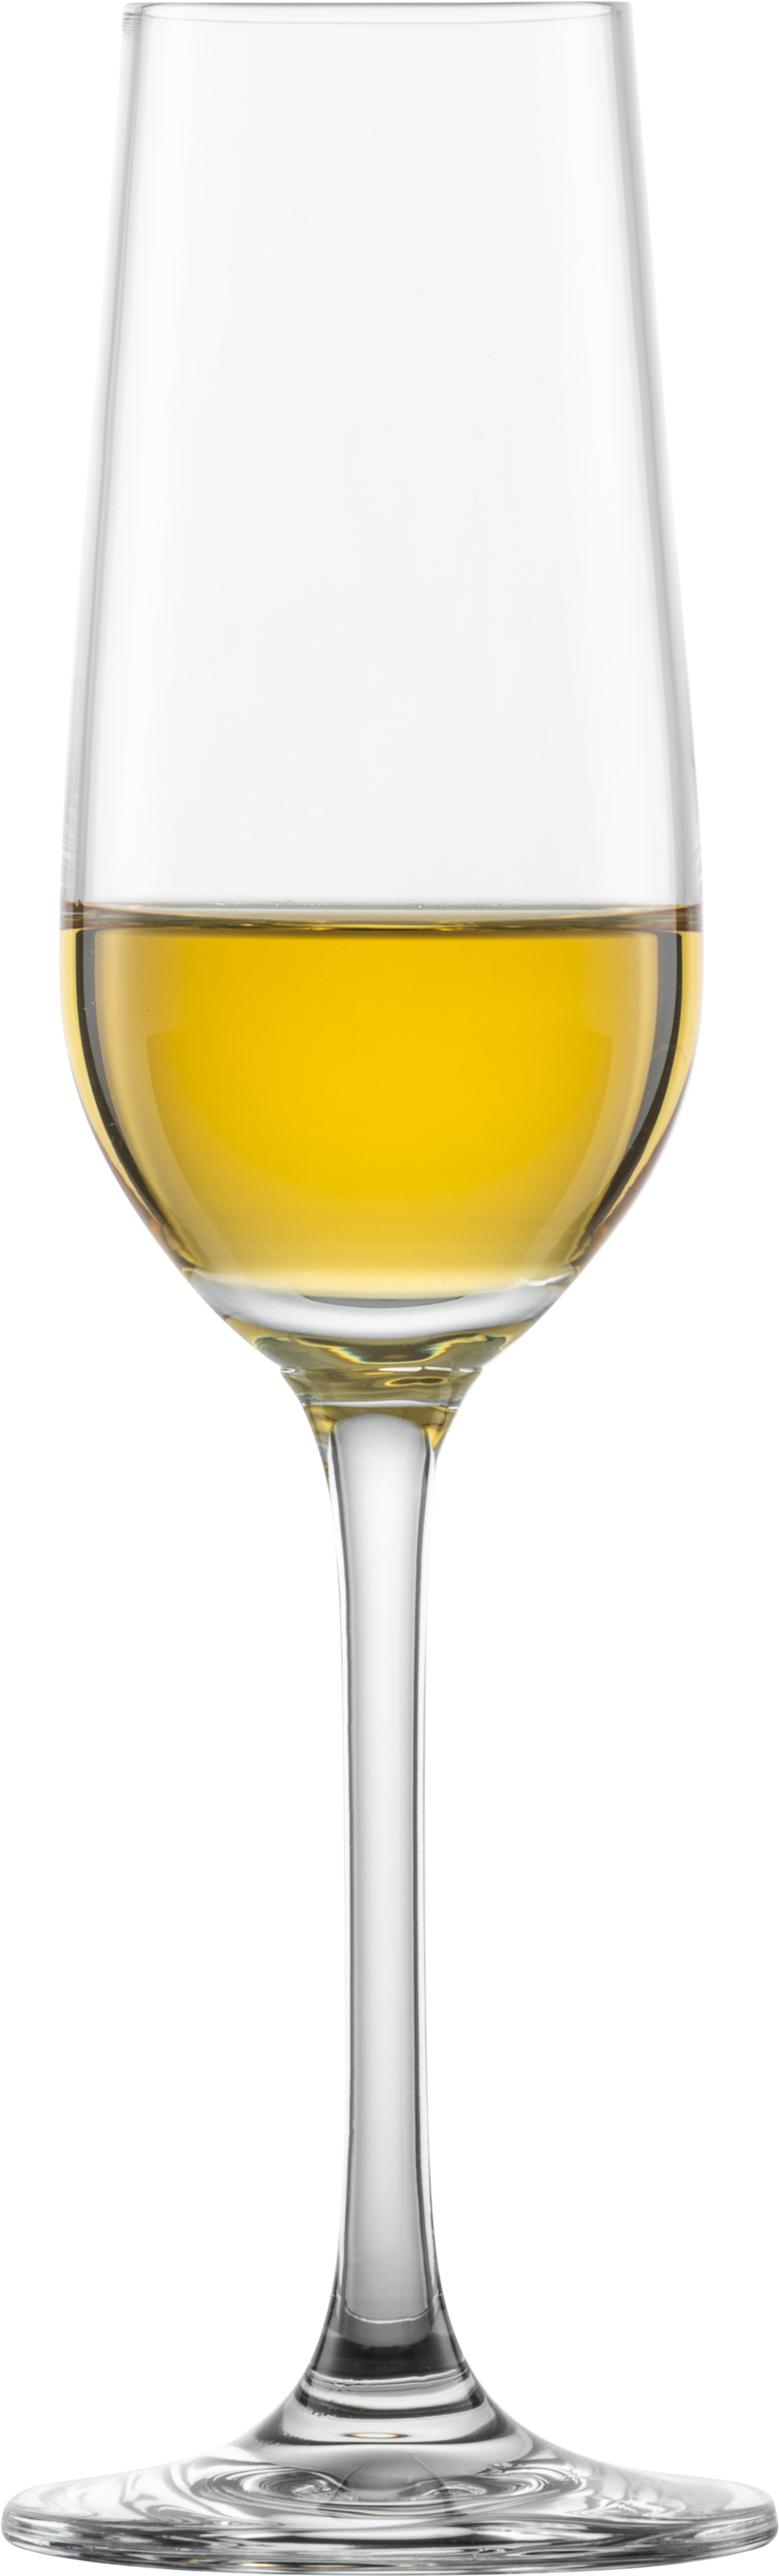 Sherryglas / Proseccoglas Bar Special 118ml 